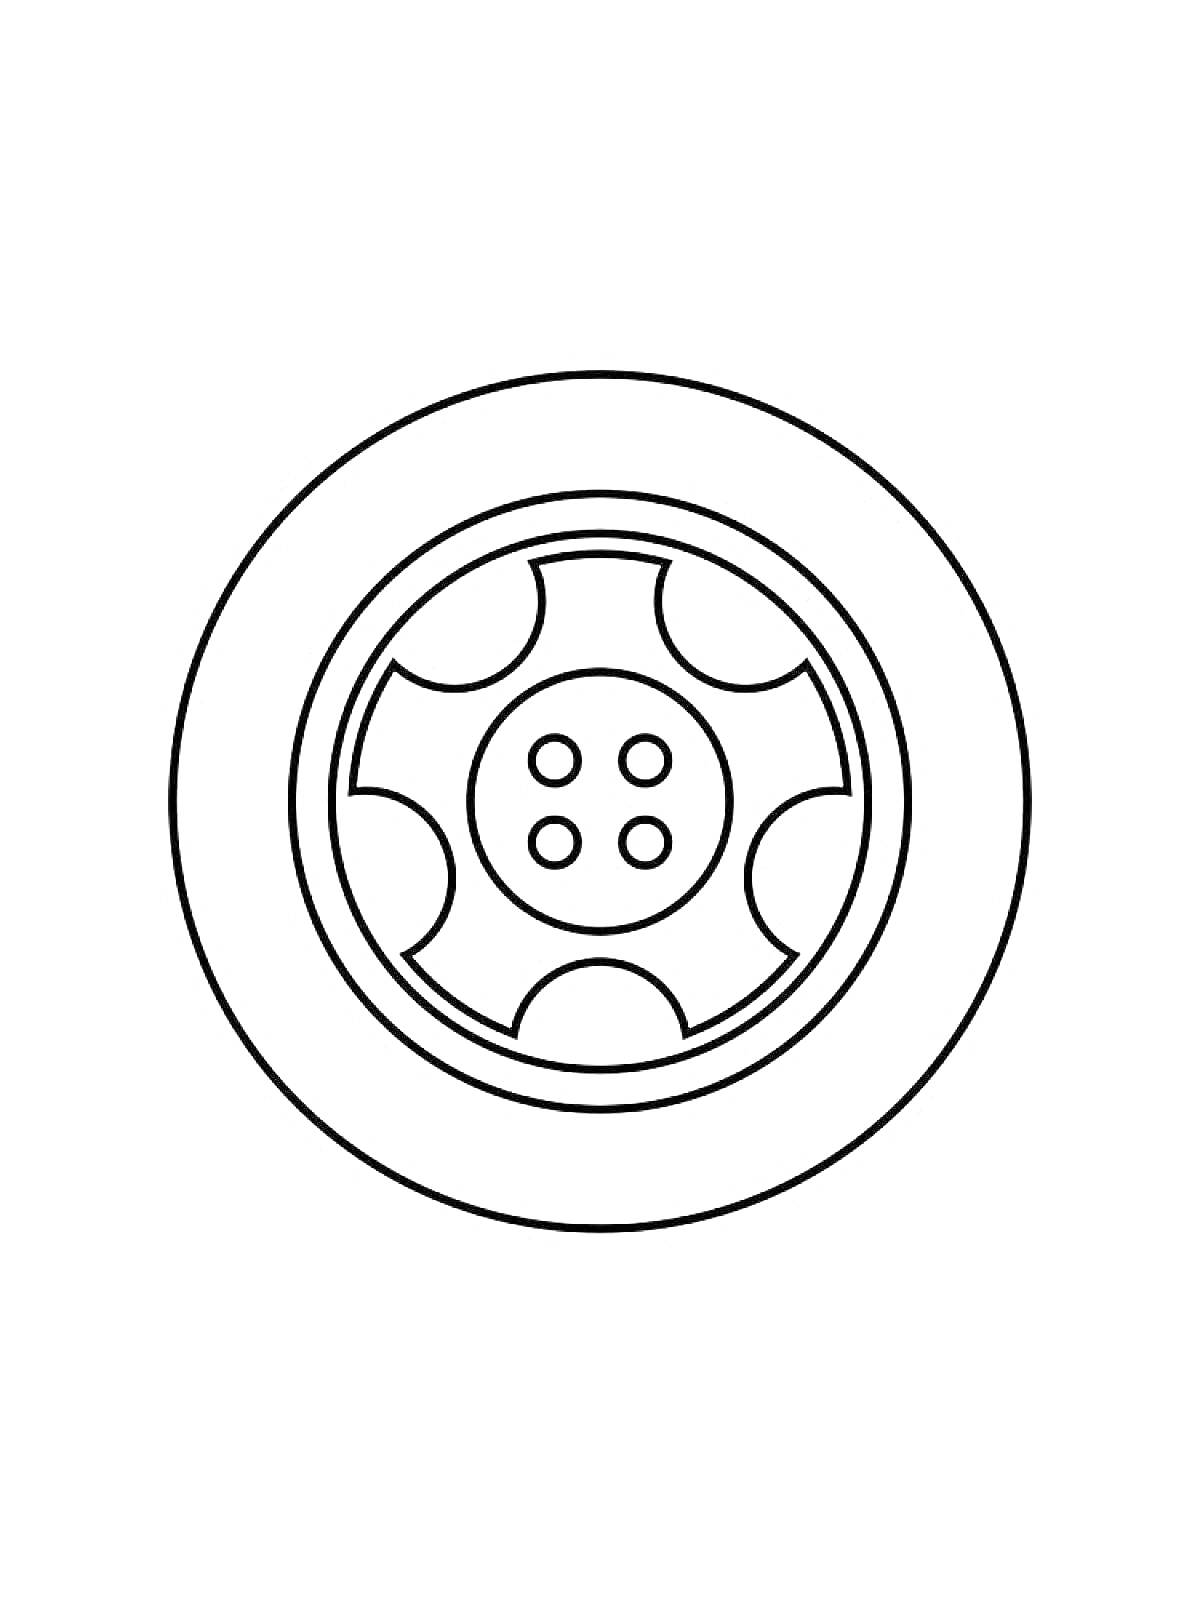 РаскраскаКолесо с шиной и диском (5 спиц и болты)